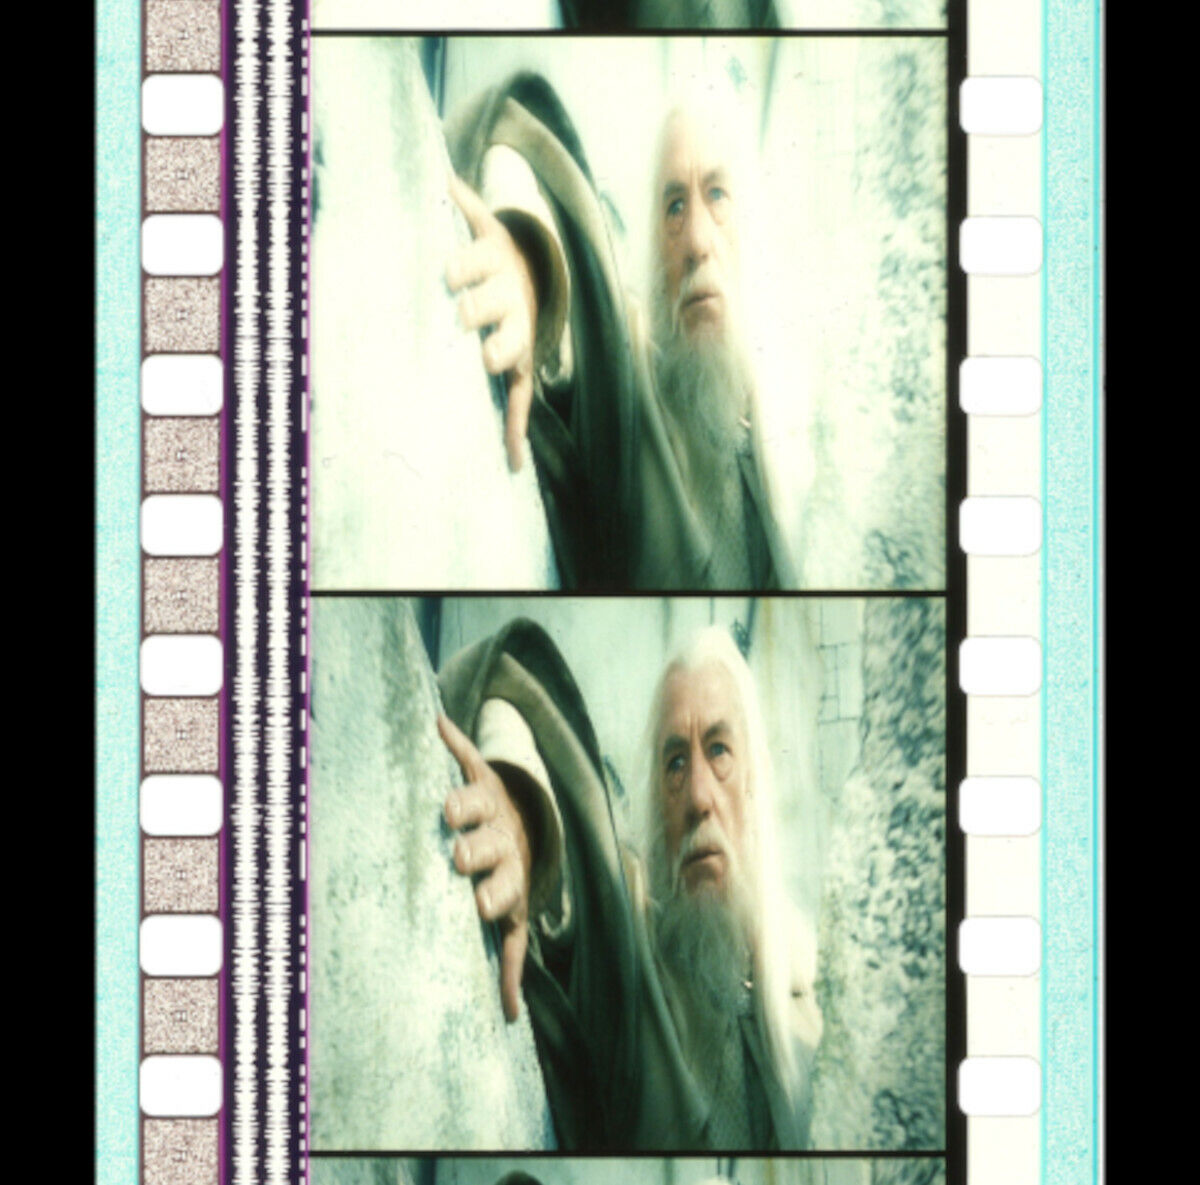 Lotr - Return Of King - Gandalf Illuminated! - 35mm 5 Cell Film Strip 001